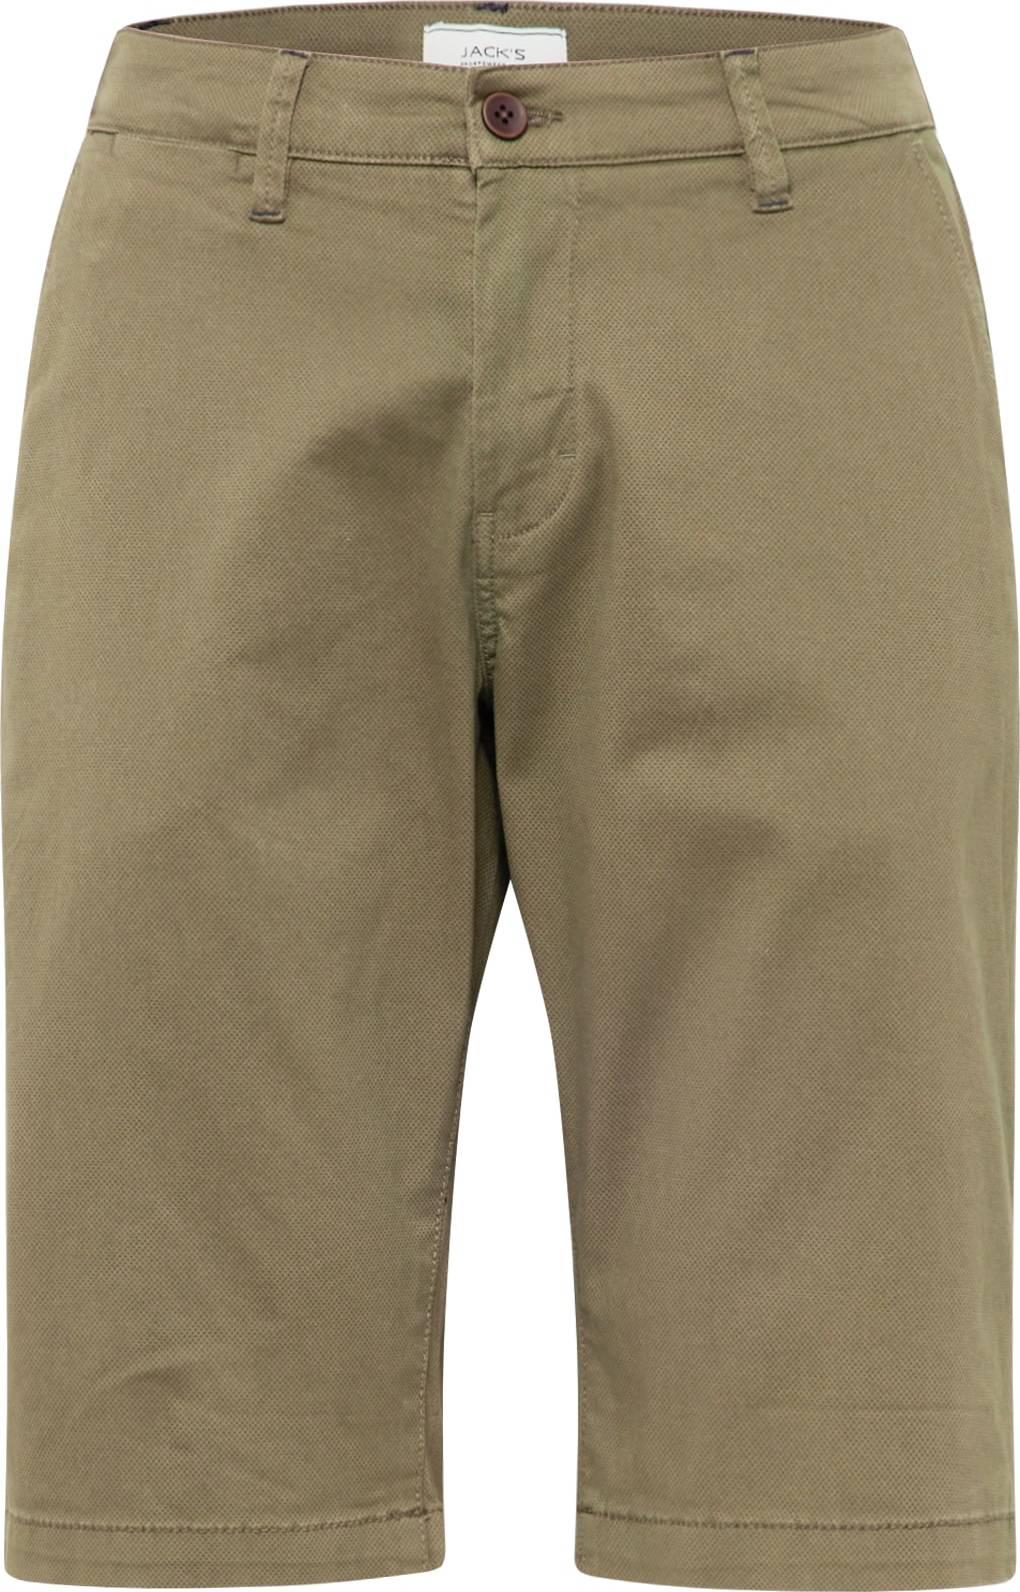 Jack's Chino kalhoty khaki